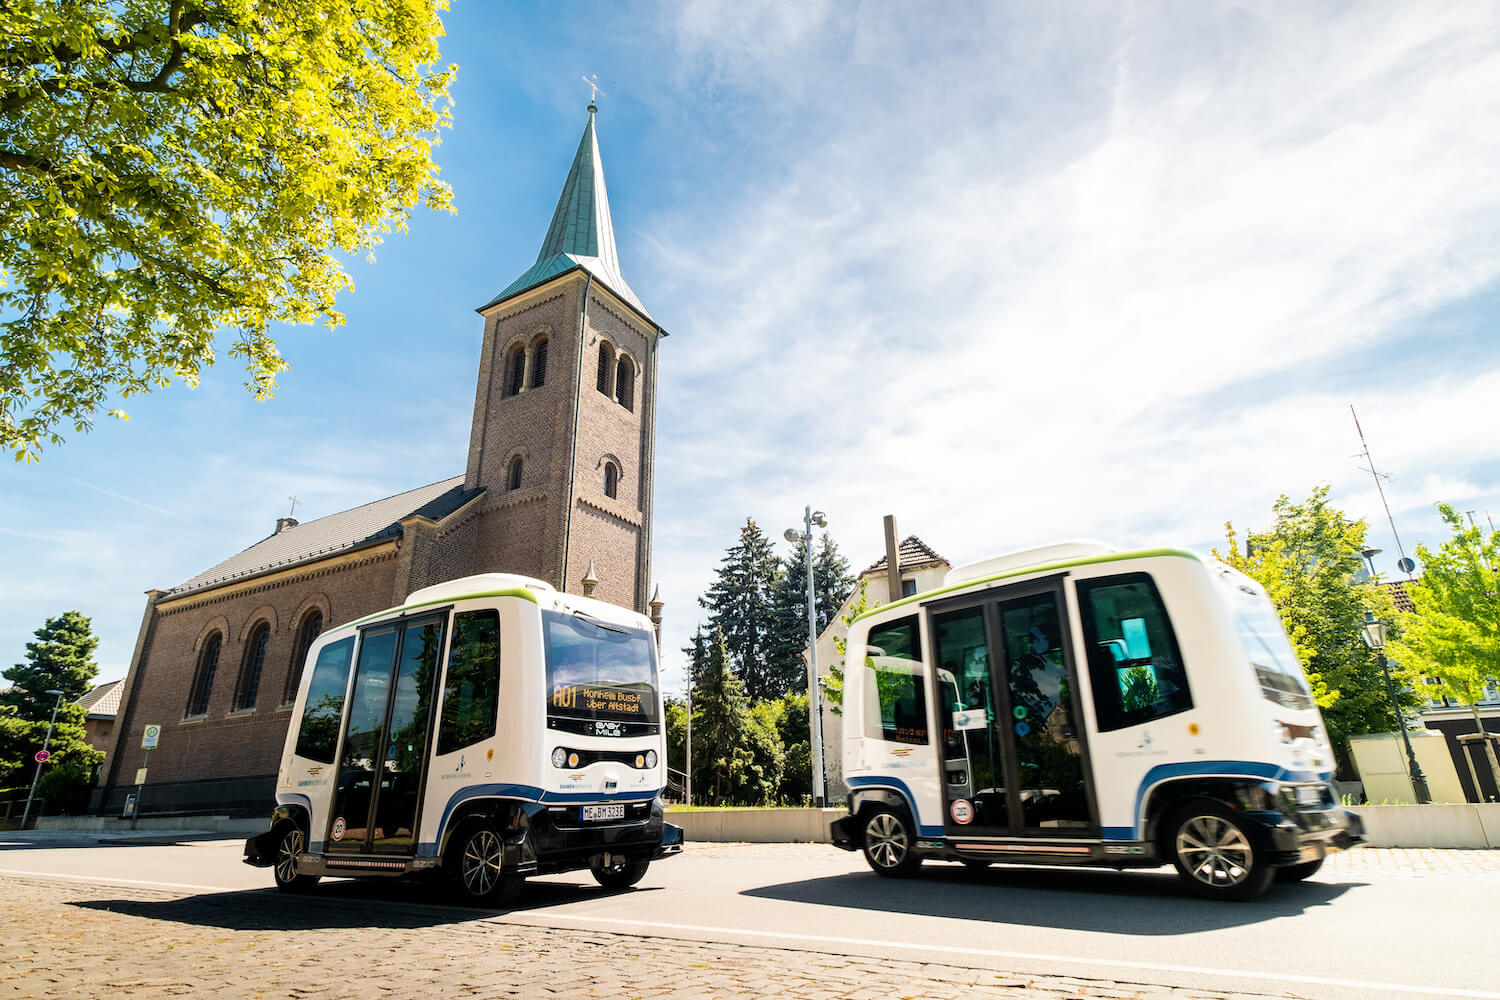 Zwei autonome Kleinbusse fahren auf Kopfsteinpflaster an einem sonnigen Tag, im Hintergrund ist eine Kirche zu sehen.